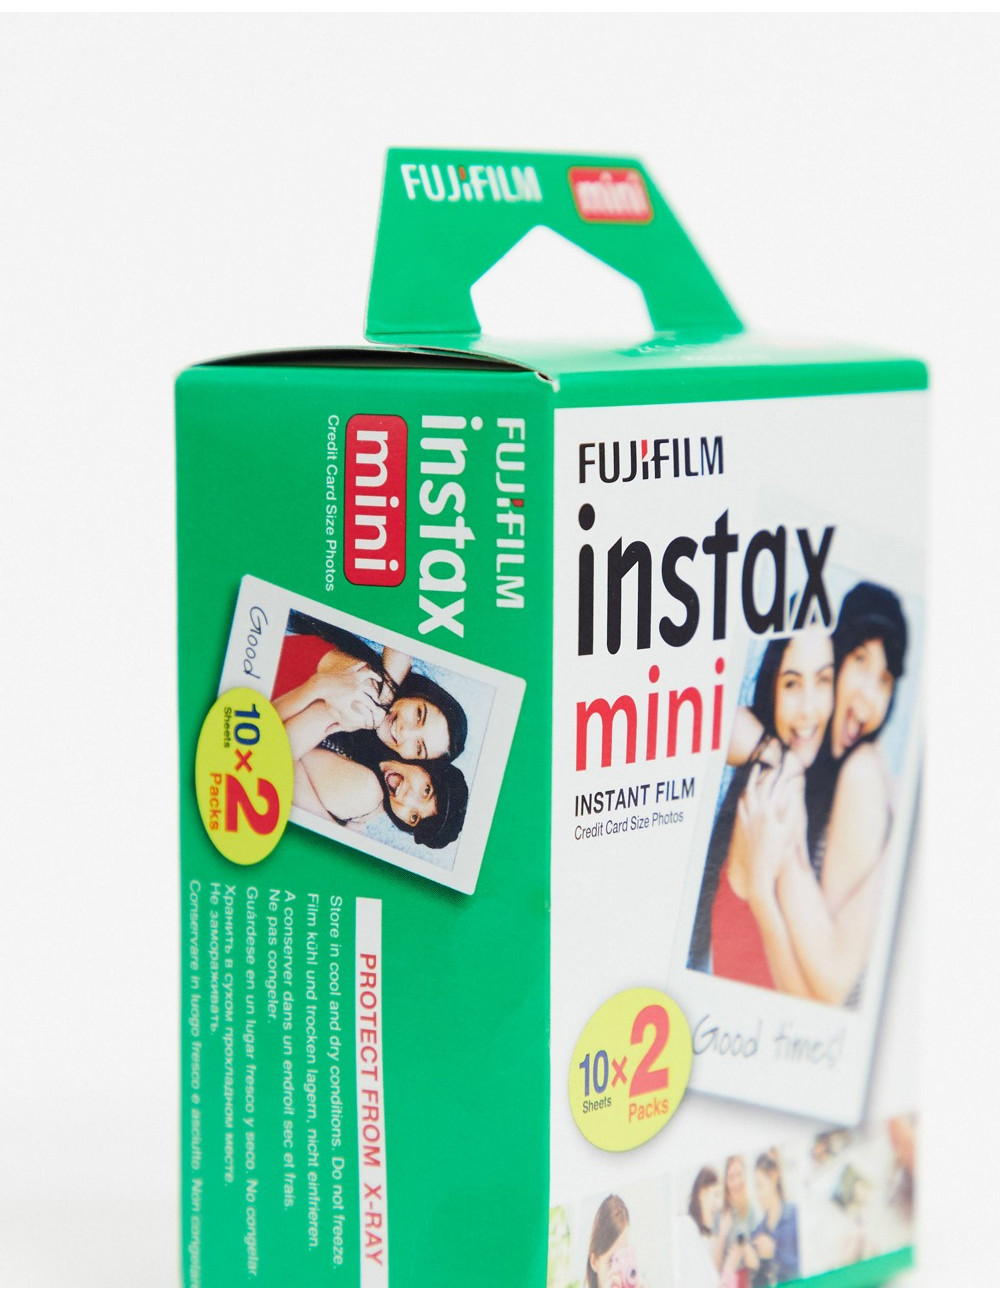 Fujifilm Instax mini film...